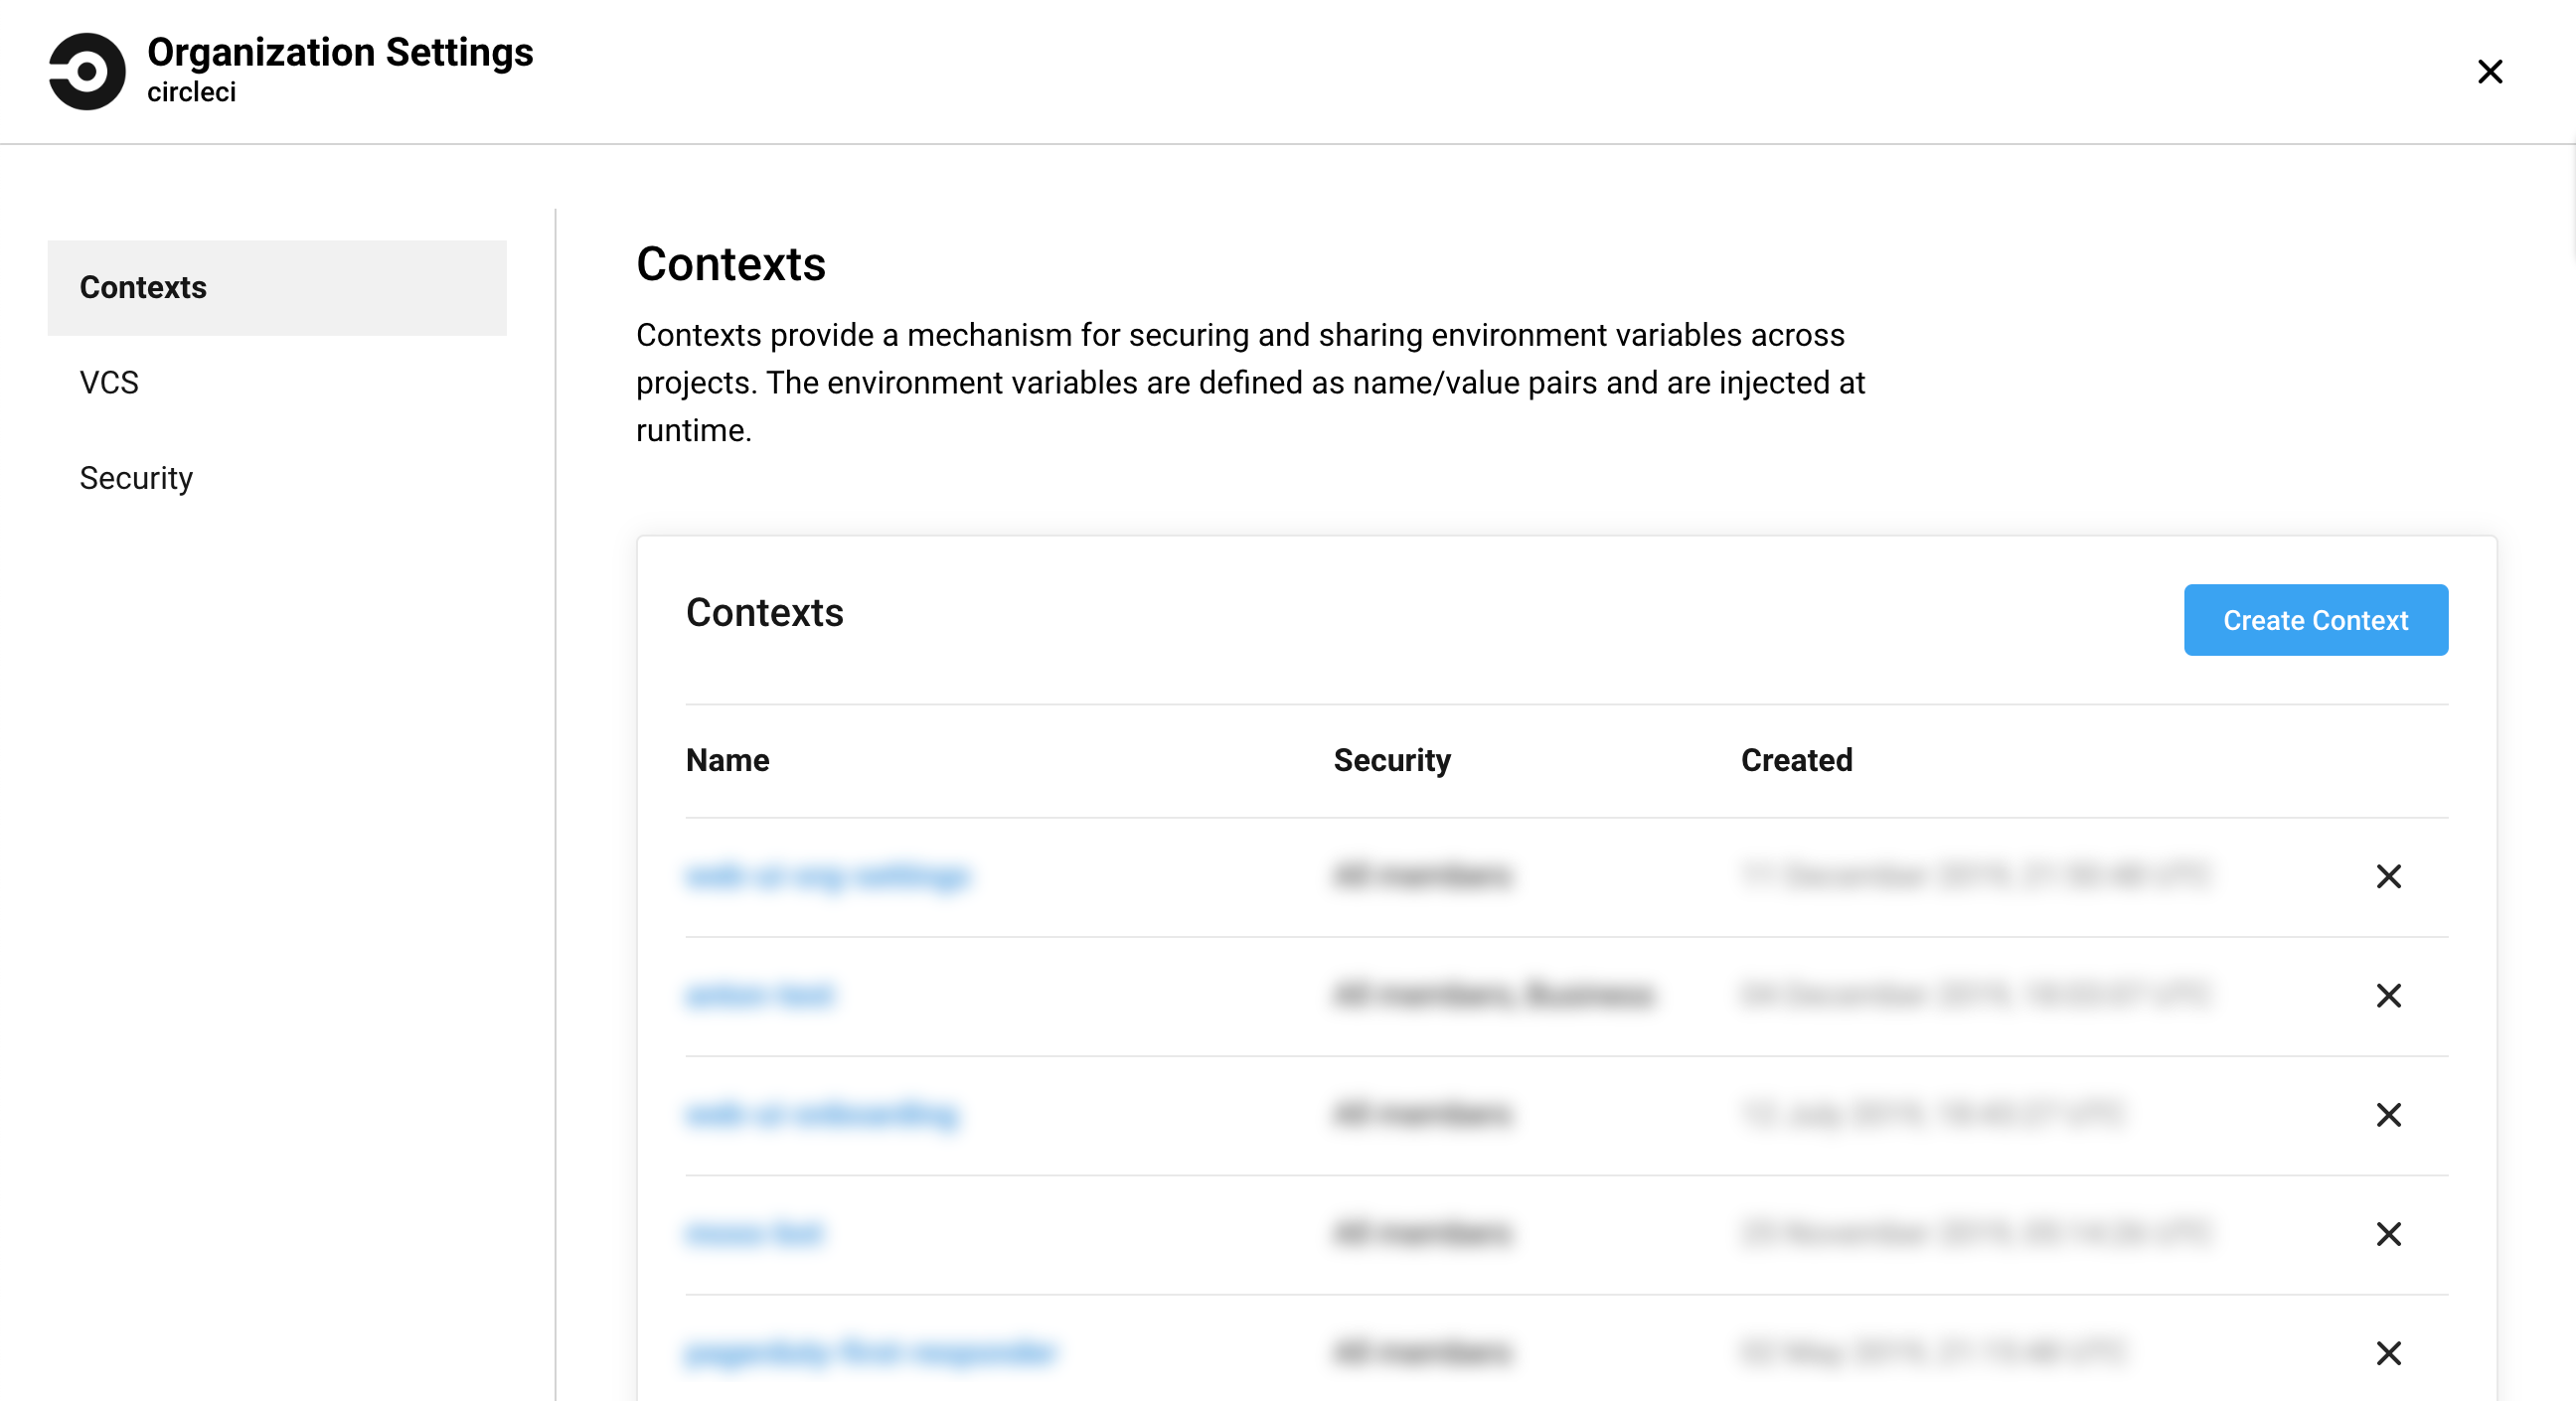 org-settings-contexts-v2.png